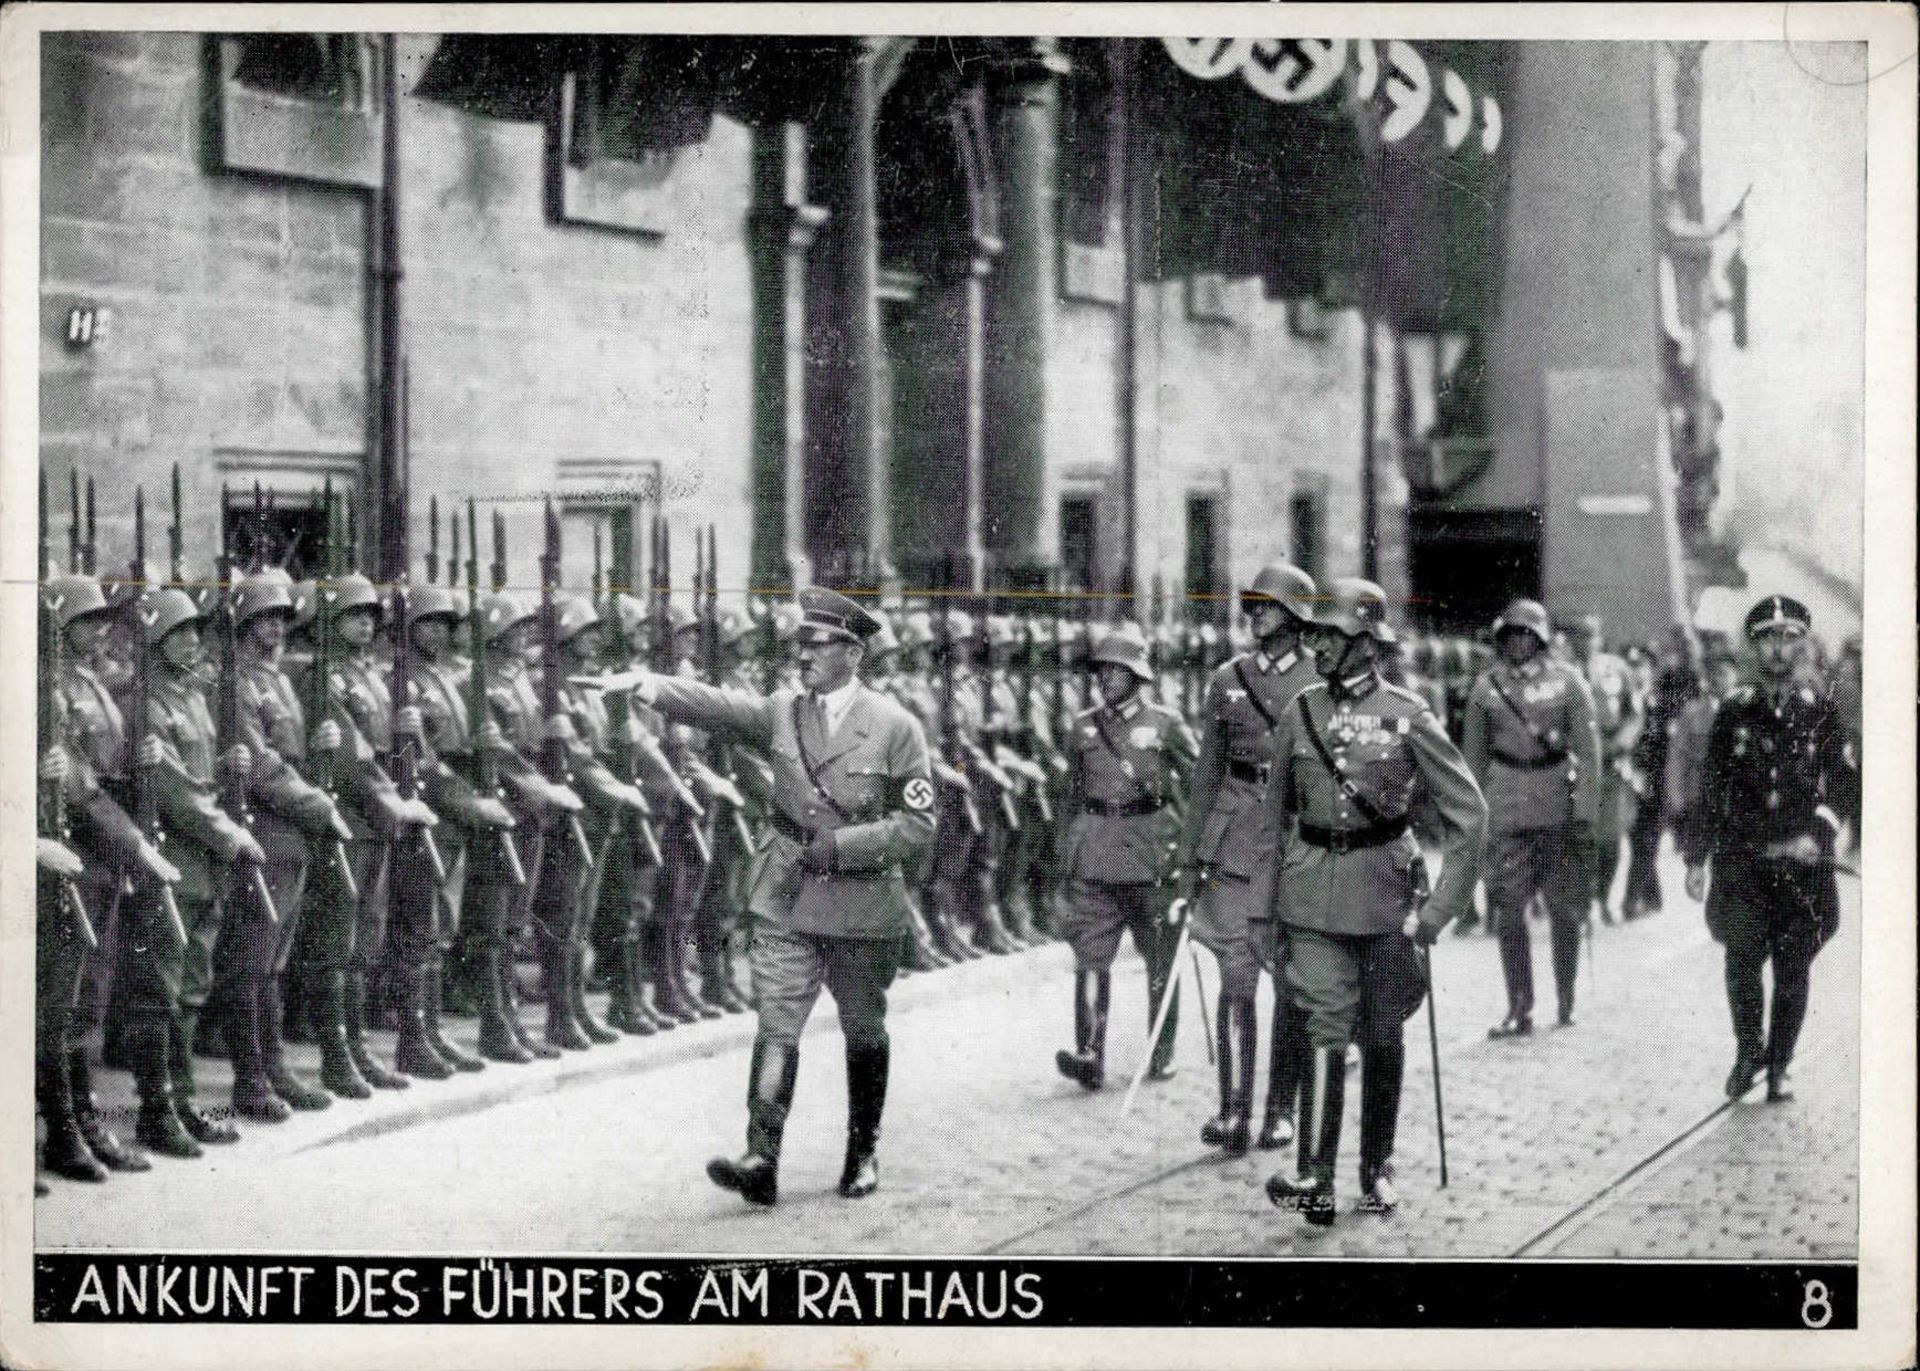 REICHSPARTEITAG NÜRNBERG WK II - Intra 8 Ankunft des Führers am Rathaus mit SS HIMMLER I